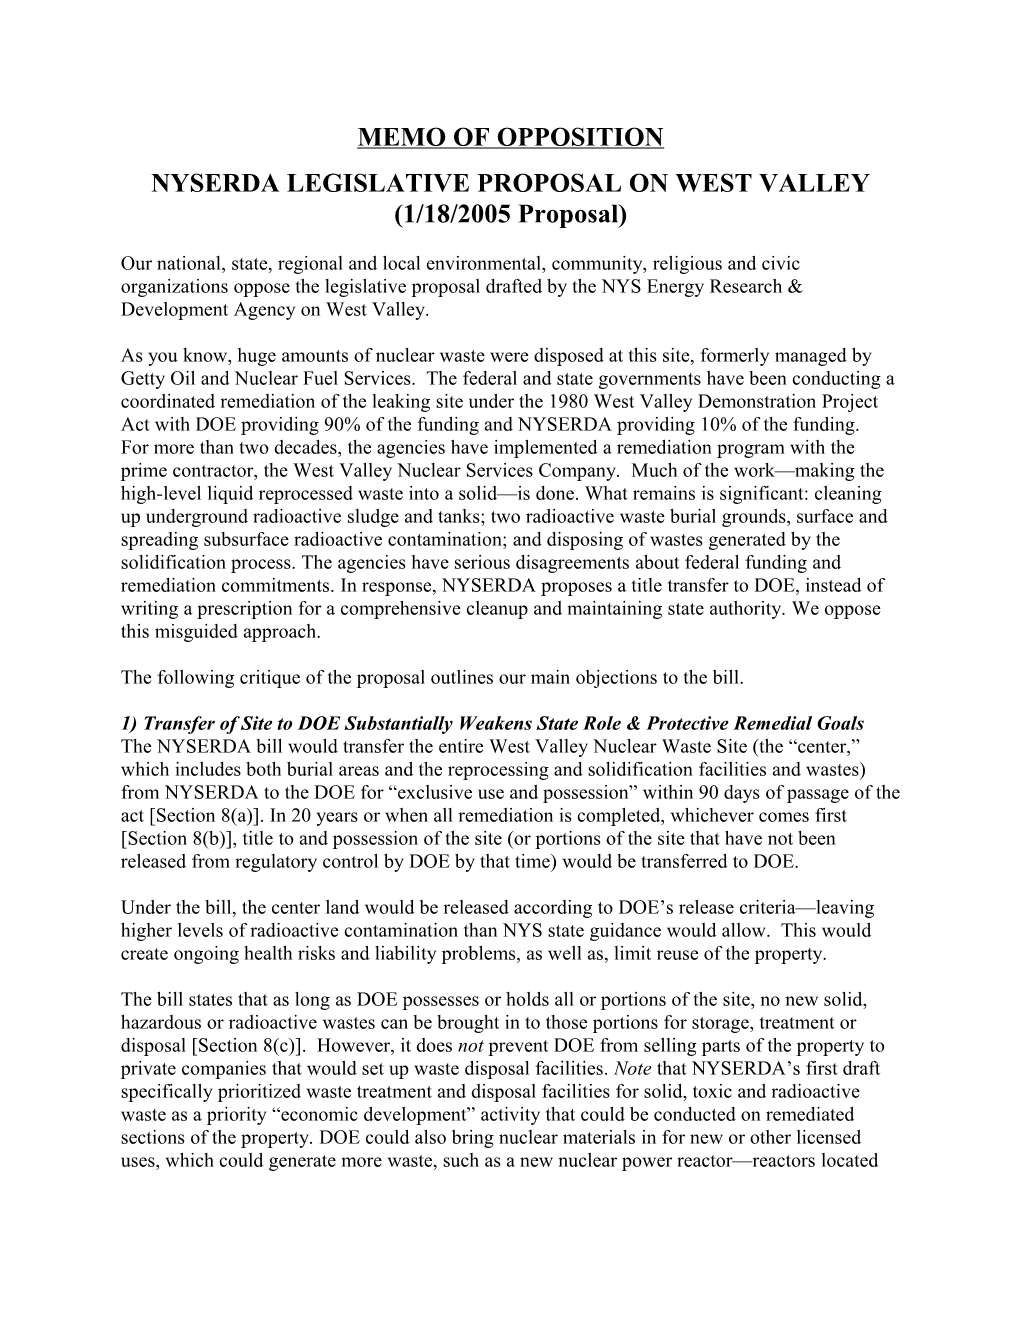 Critique of NYSERDA CTF West Valley Bill